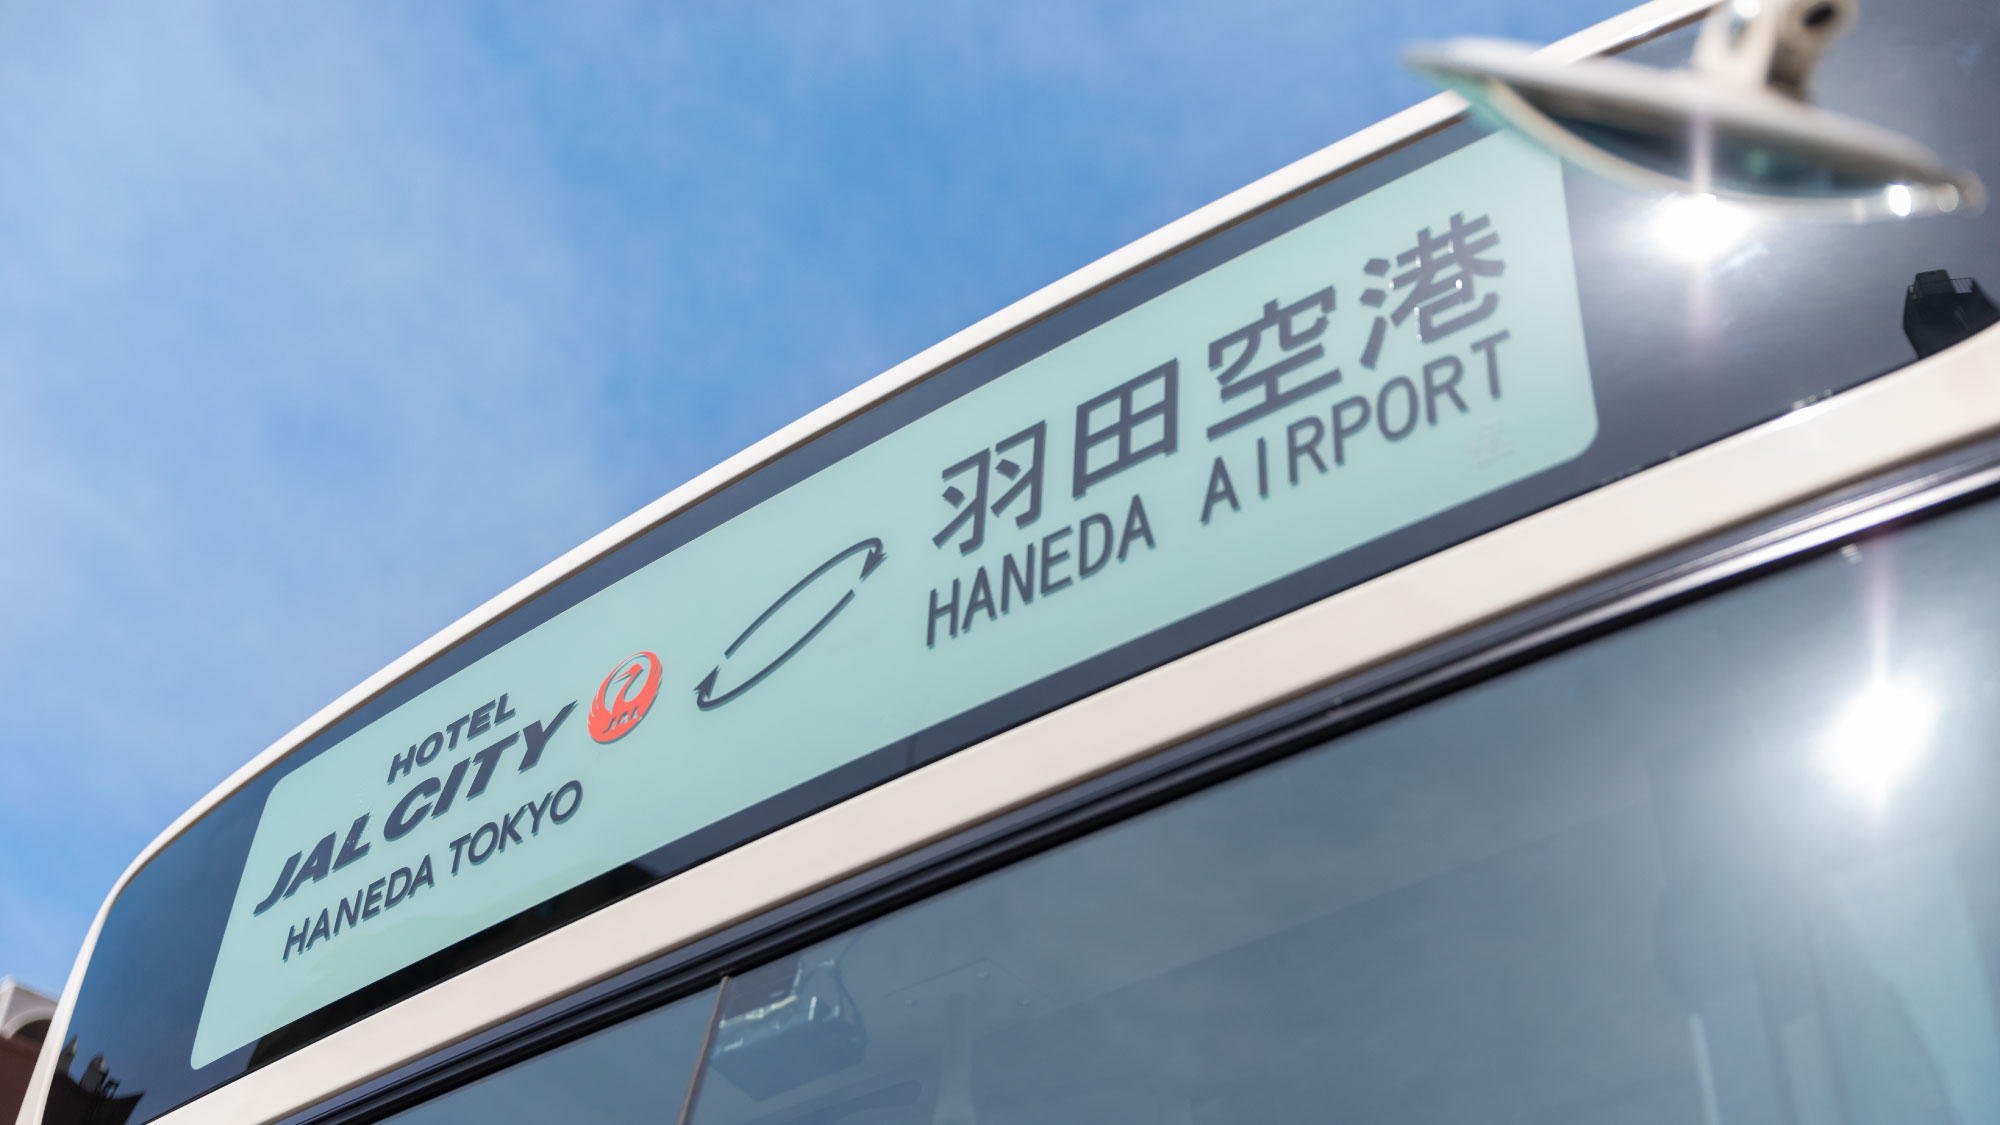 ホテル～羽田空港間無料シャトルバス